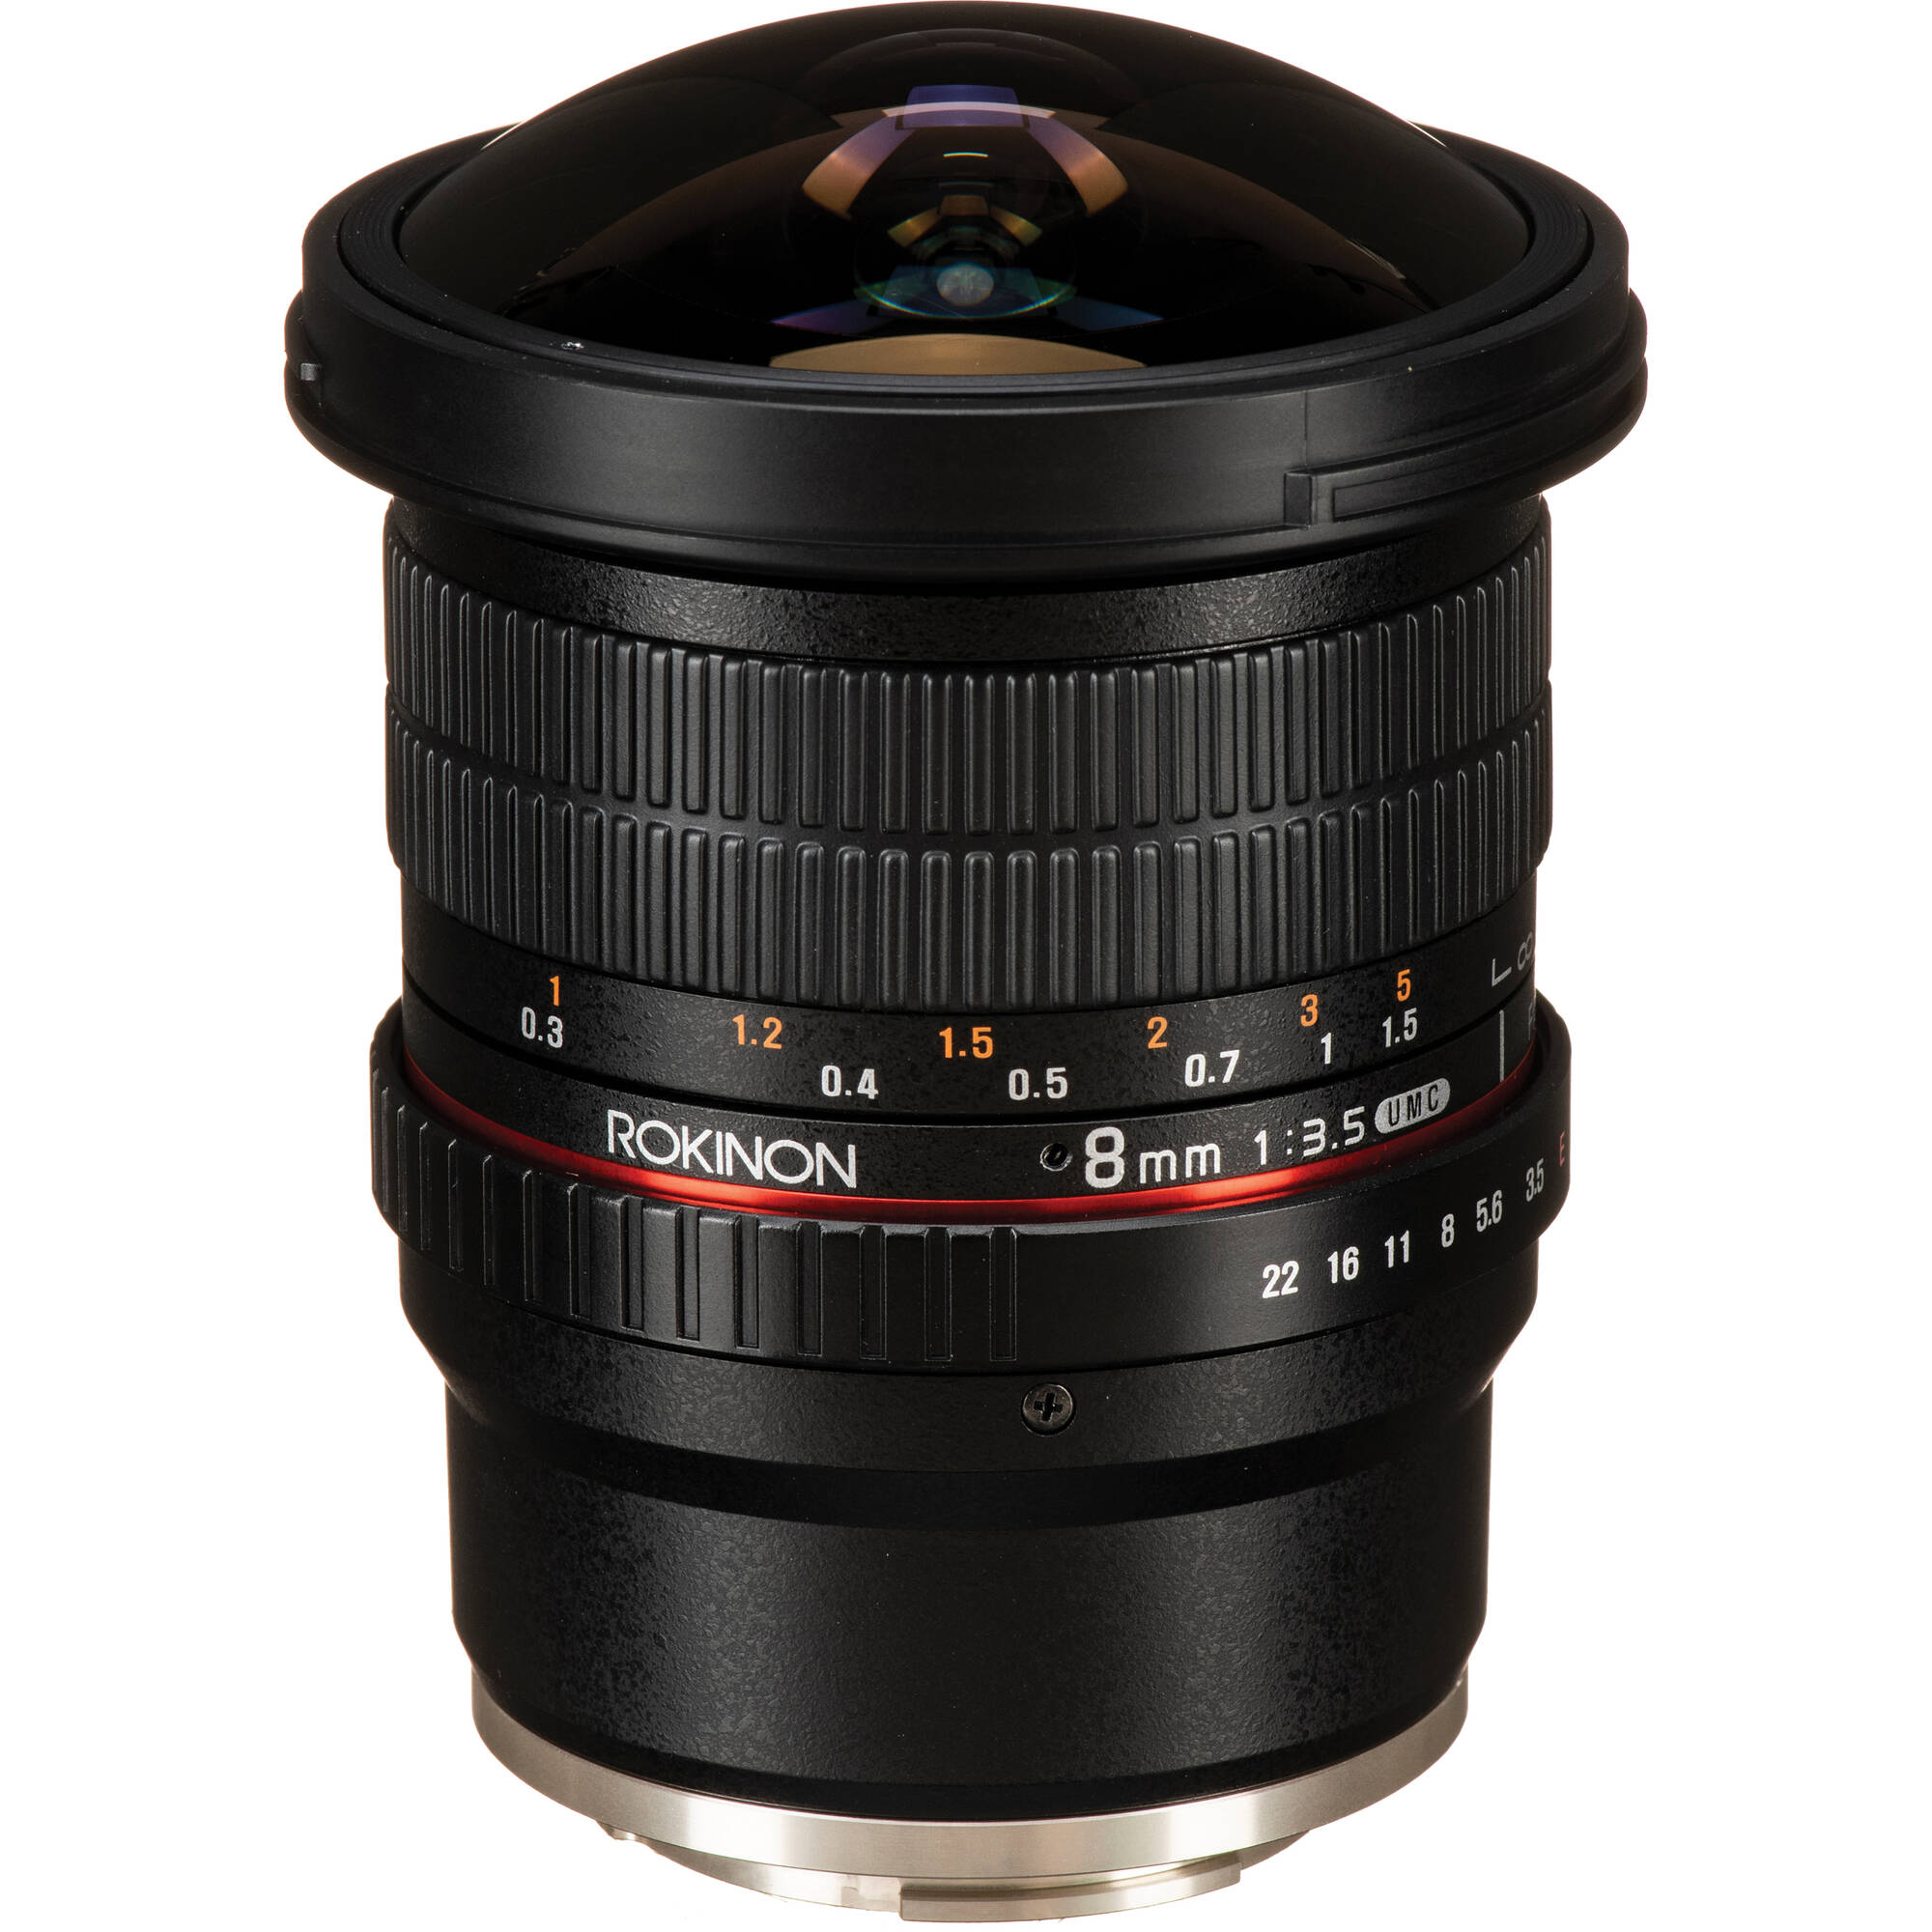 Rokinon 8mm F 3 5 Umc Fisheye Cs Ii Lens For Sony E Hd8m Nex